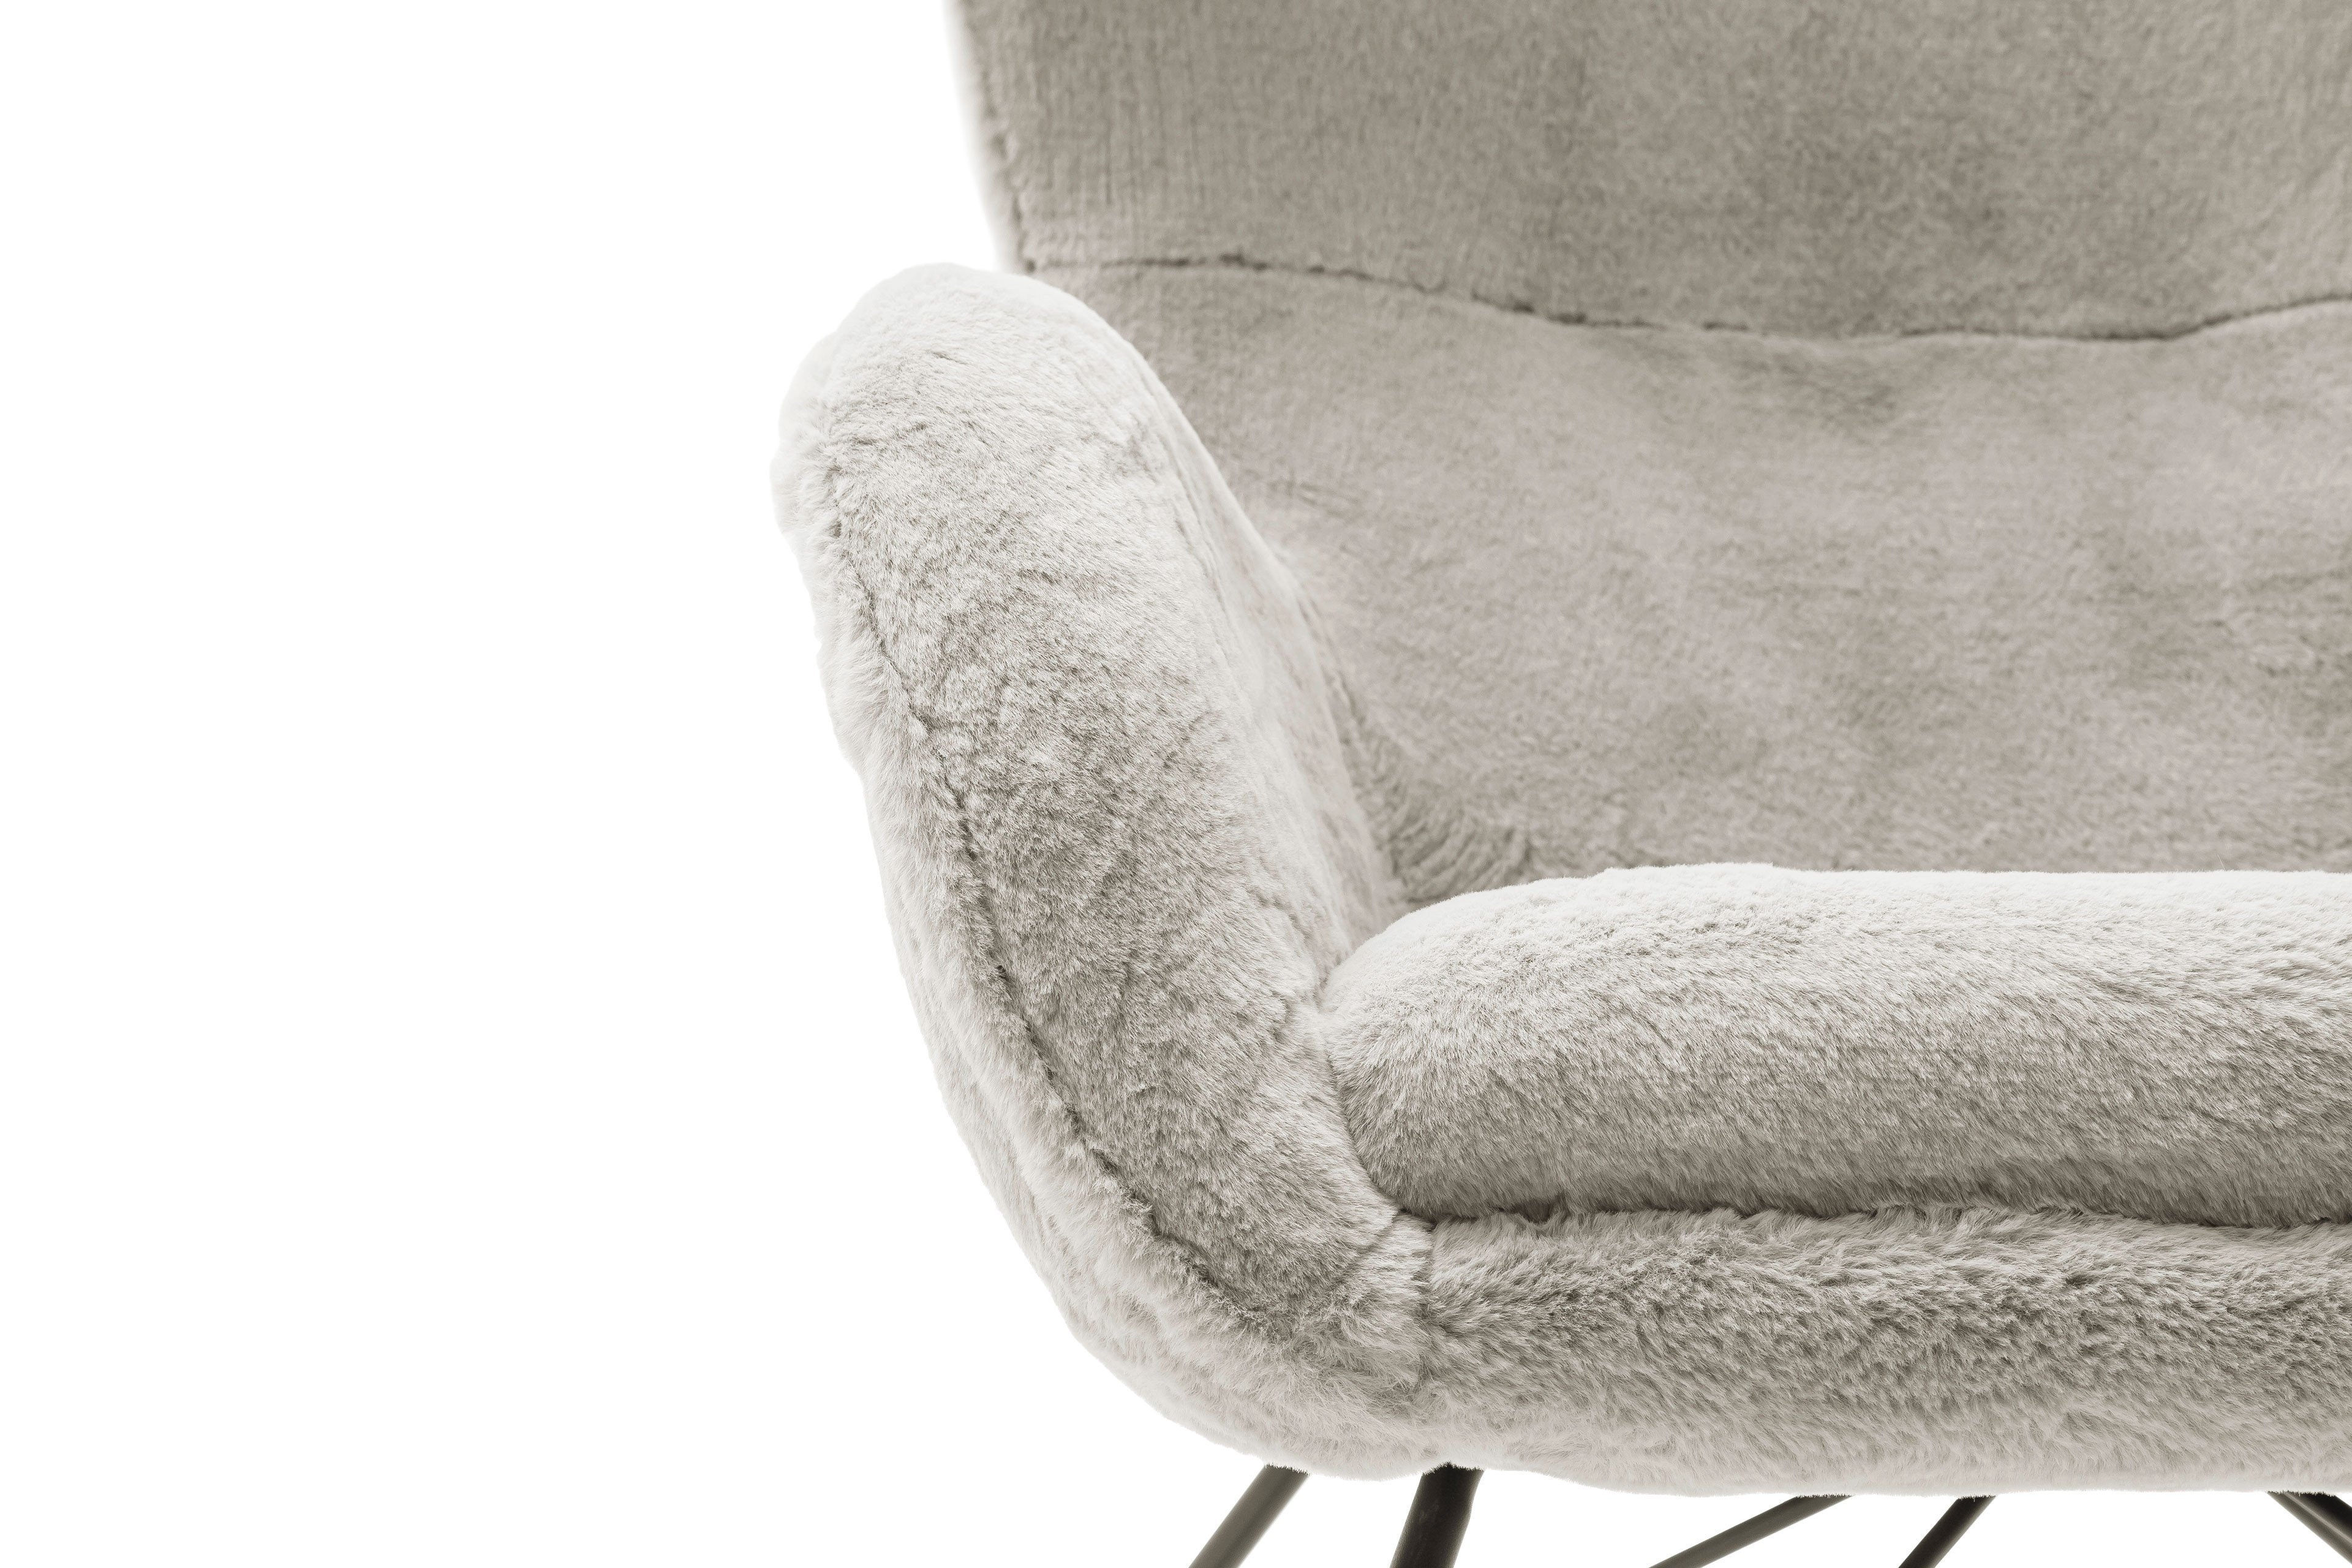 MCA furniture Schaukelstuhl Oriolo in Creme | Möbel Letz - Ihr Online-Shop